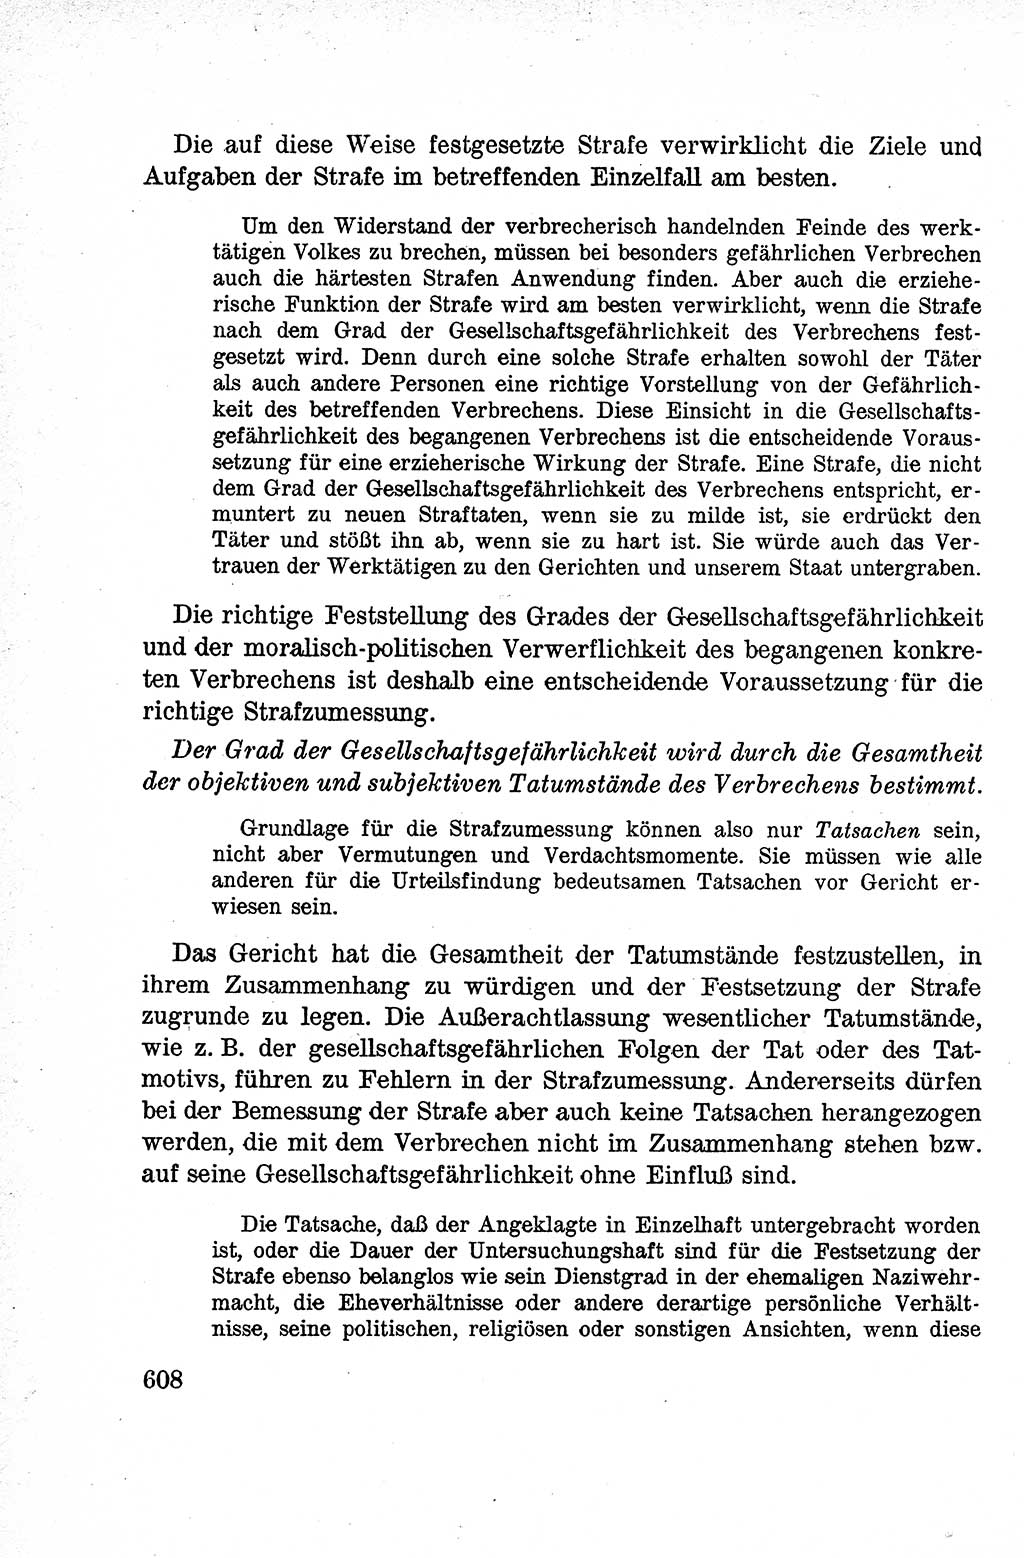 Lehrbuch des Strafrechts der Deutschen Demokratischen Republik (DDR), Allgemeiner Teil 1959, Seite 608 (Lb. Strafr. DDR AT 1959, S. 608)